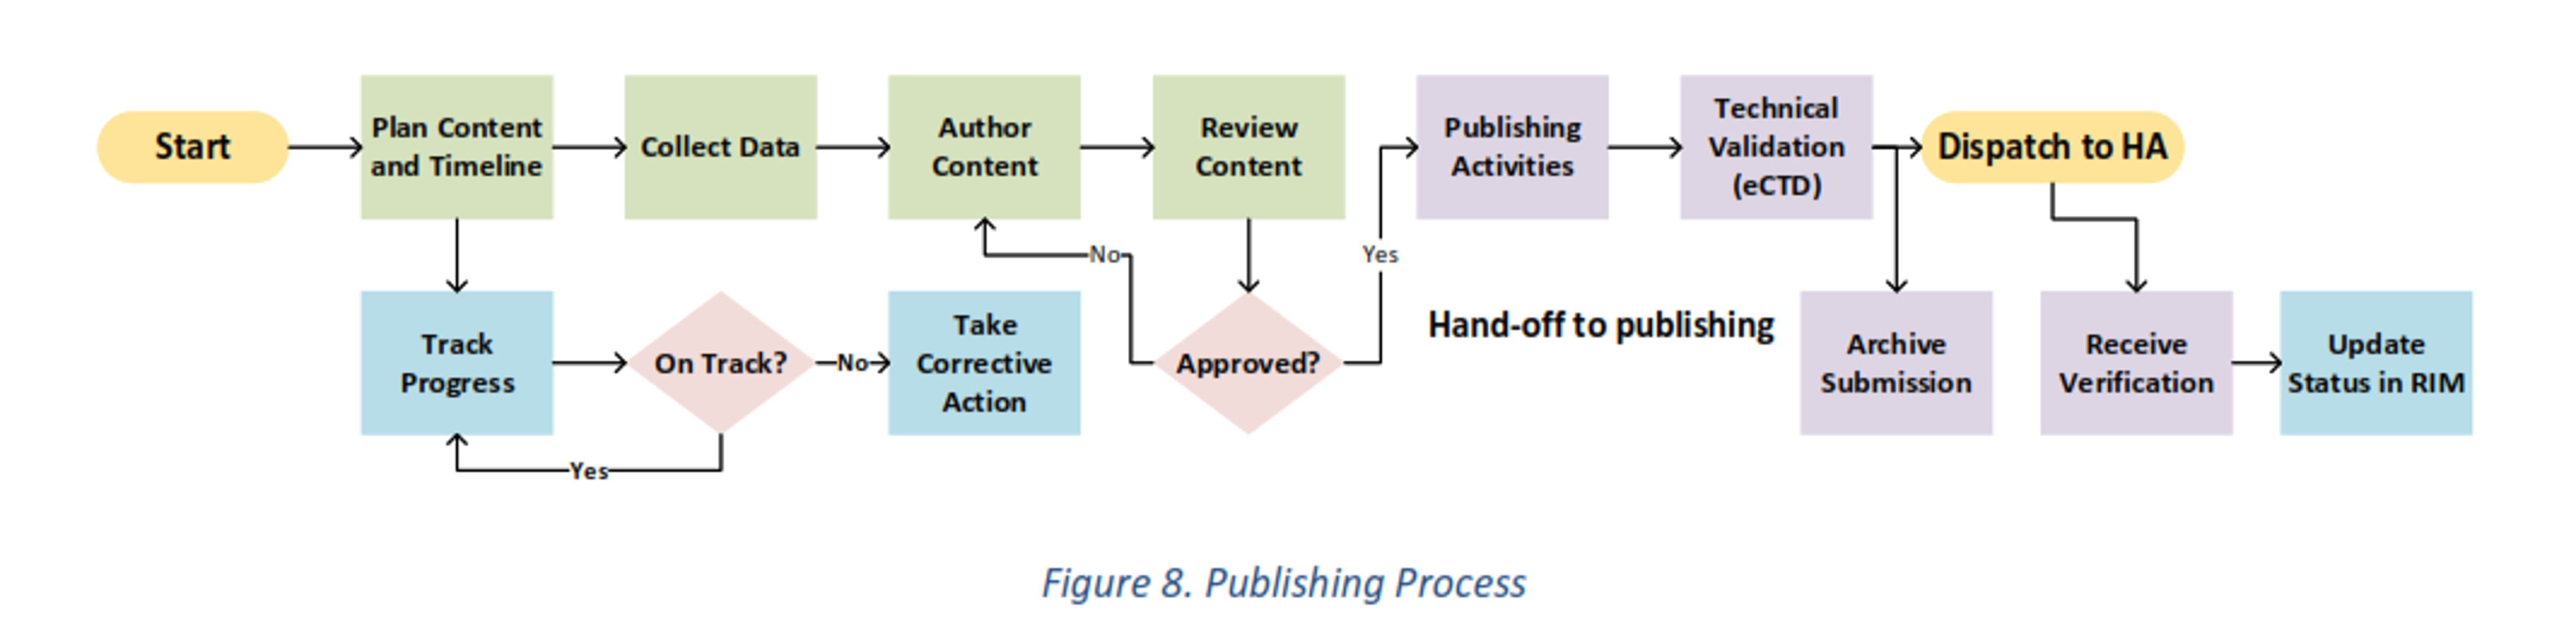 Publishing process-1